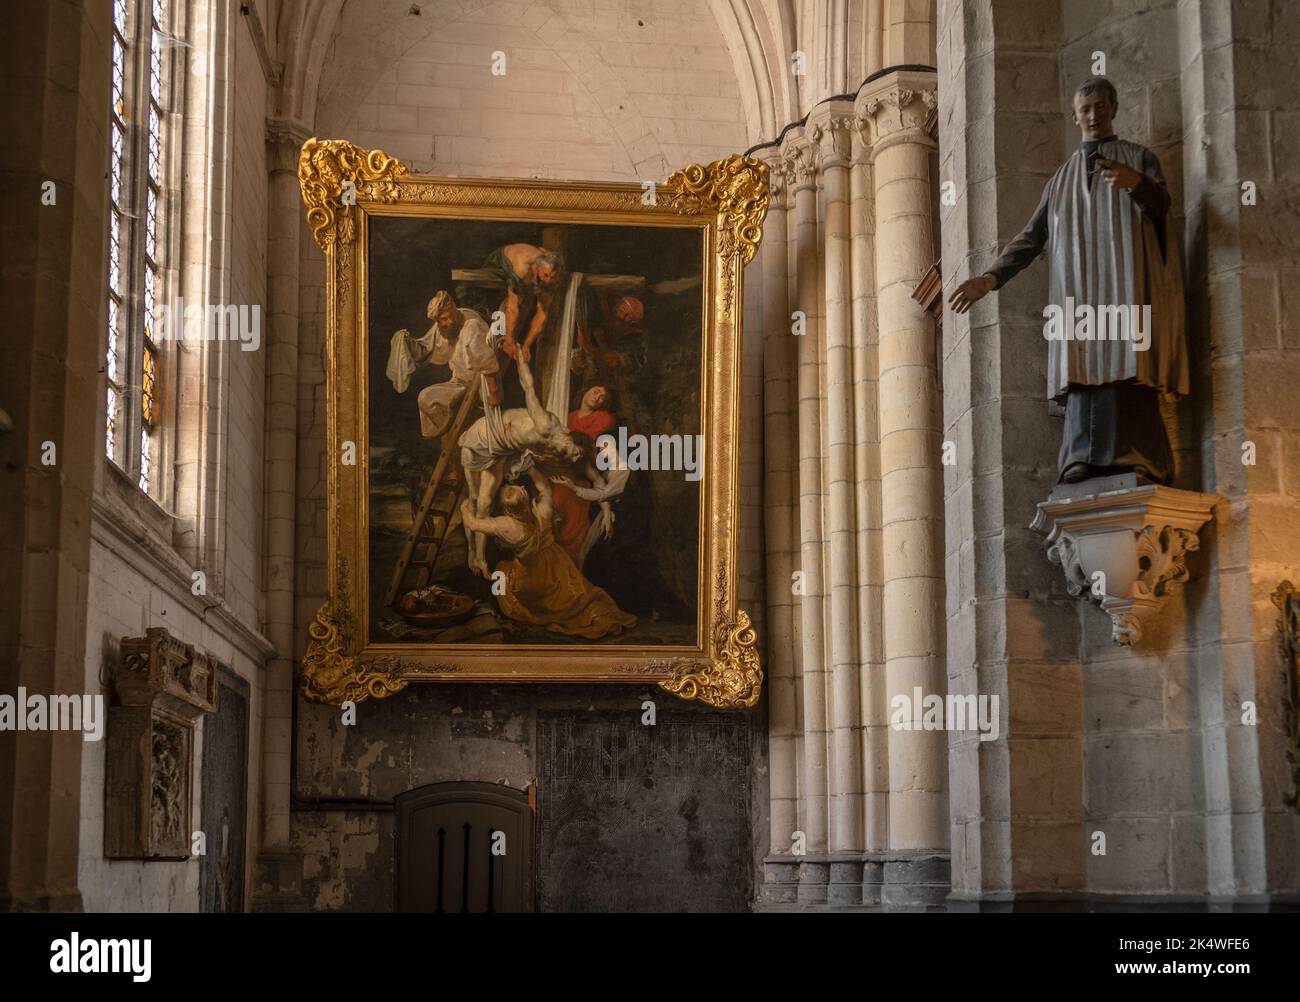 Cathédrale Saint-Omer pas de Calais France septembre 2022 peinture de la descente de la Croix par Peter Paul Rubens à la cathédrale Saint-Omer, 1616 Sai Banque D'Images